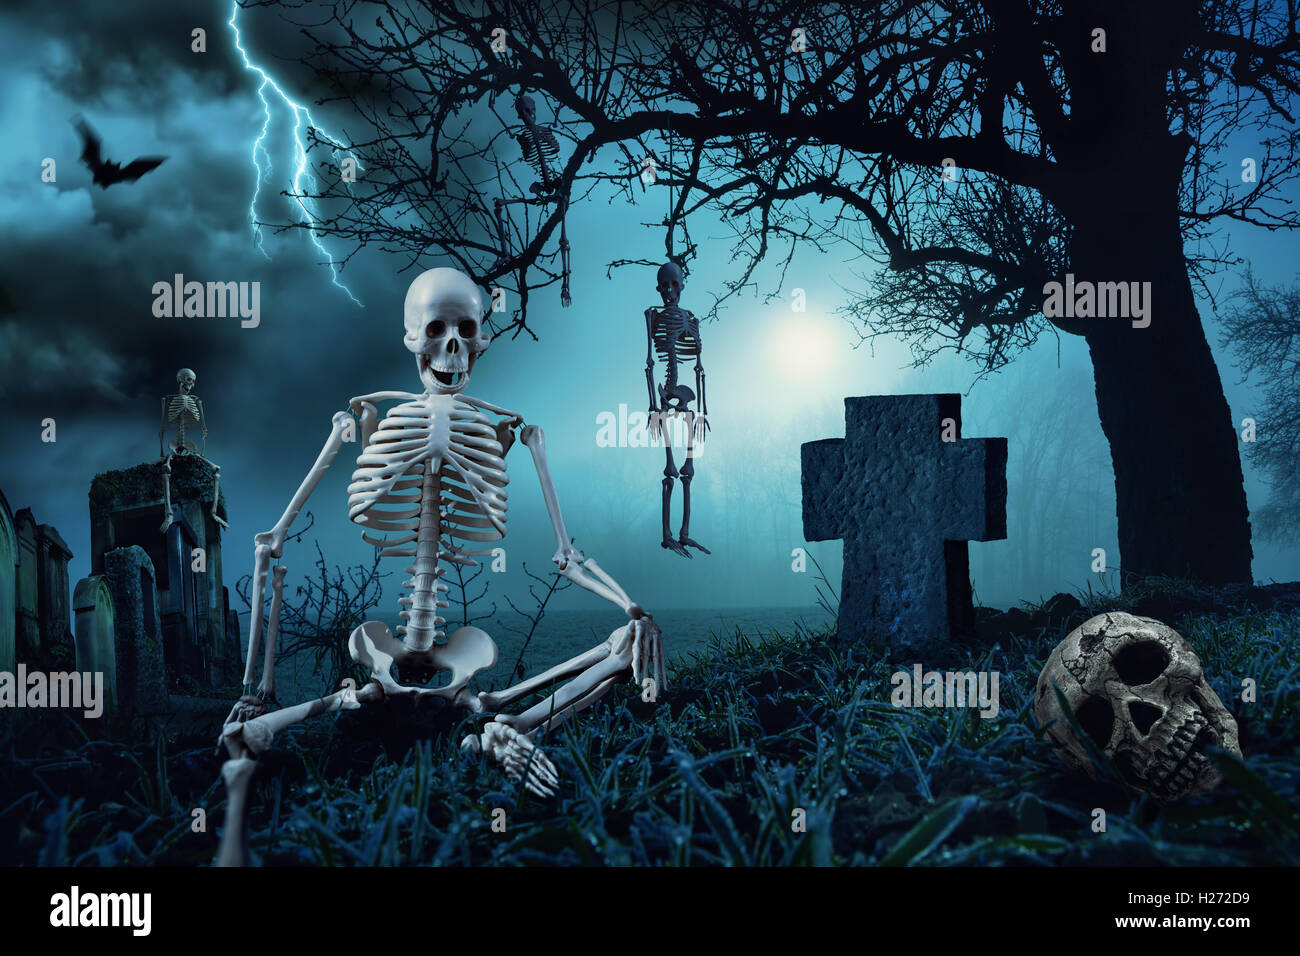 Halloween-Nachtszene mit Skeletten auf einem Friedhof und die Silhouette eines Toten Baumes im blauen Mondlicht Stockfoto